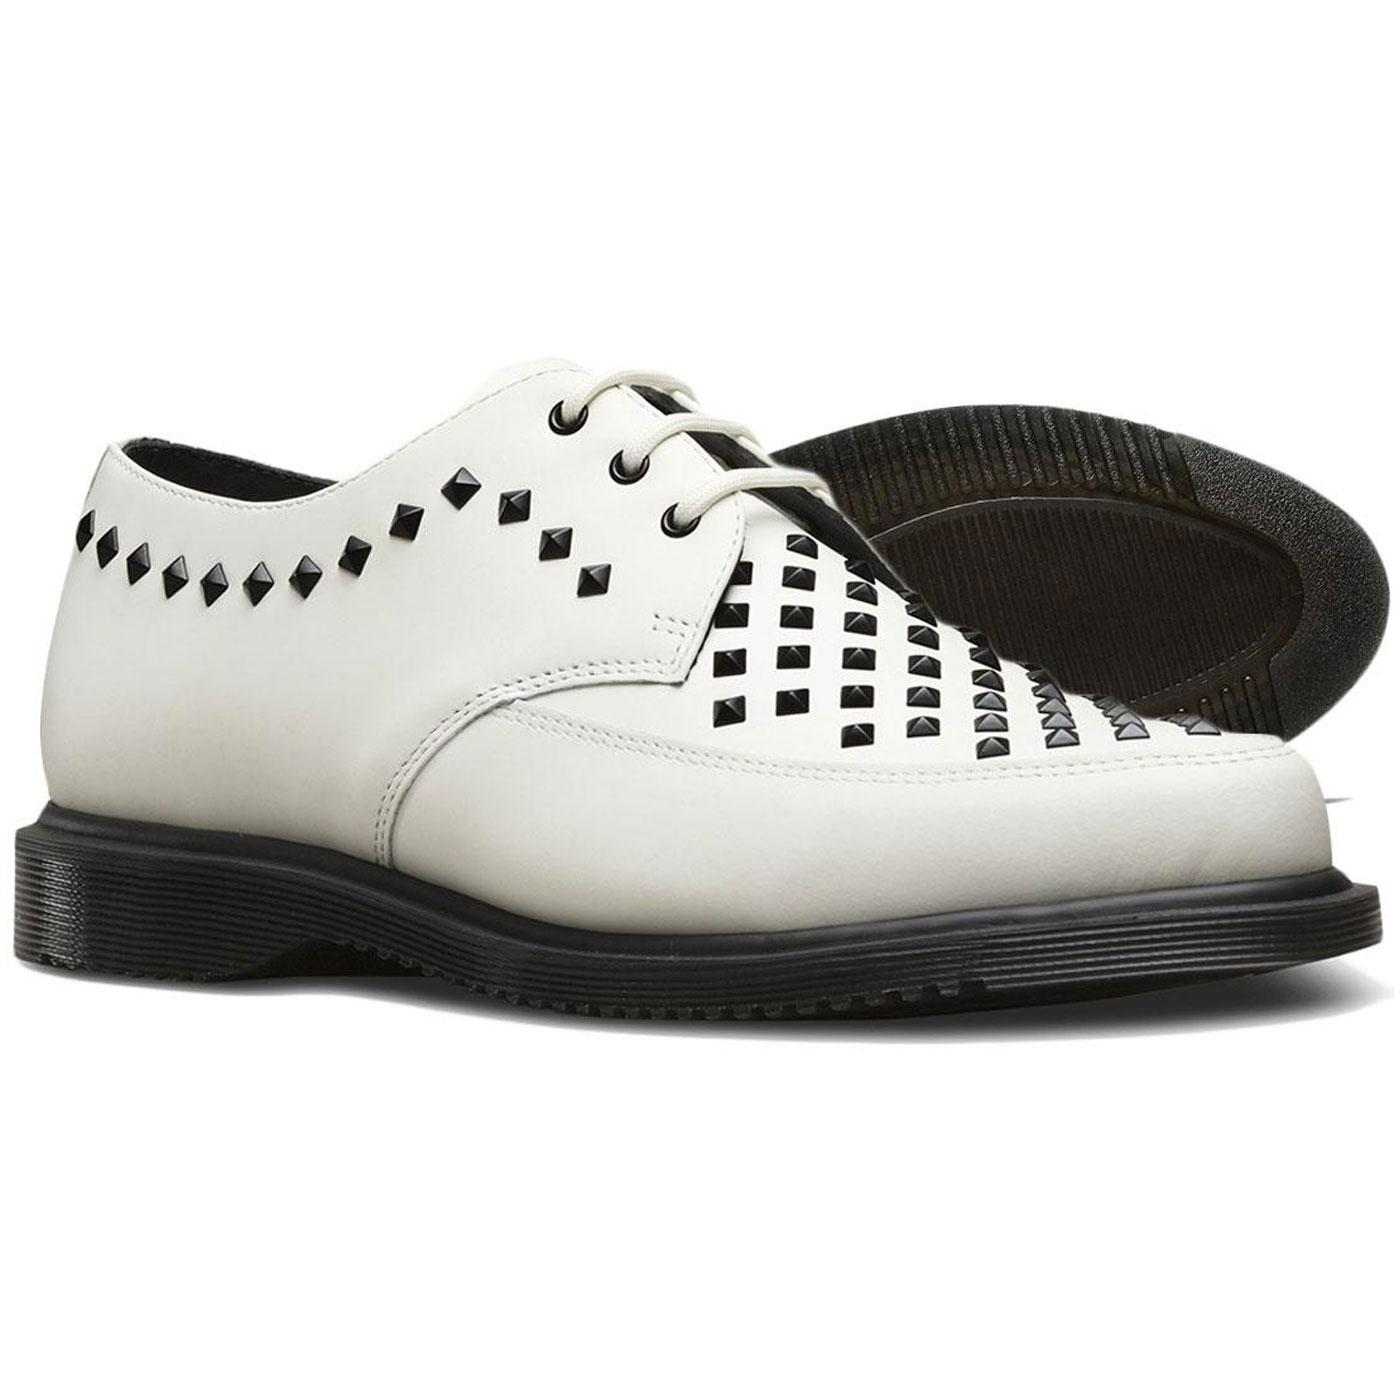 1950s Men's Shoes, Rockabilly Boots & Shoes